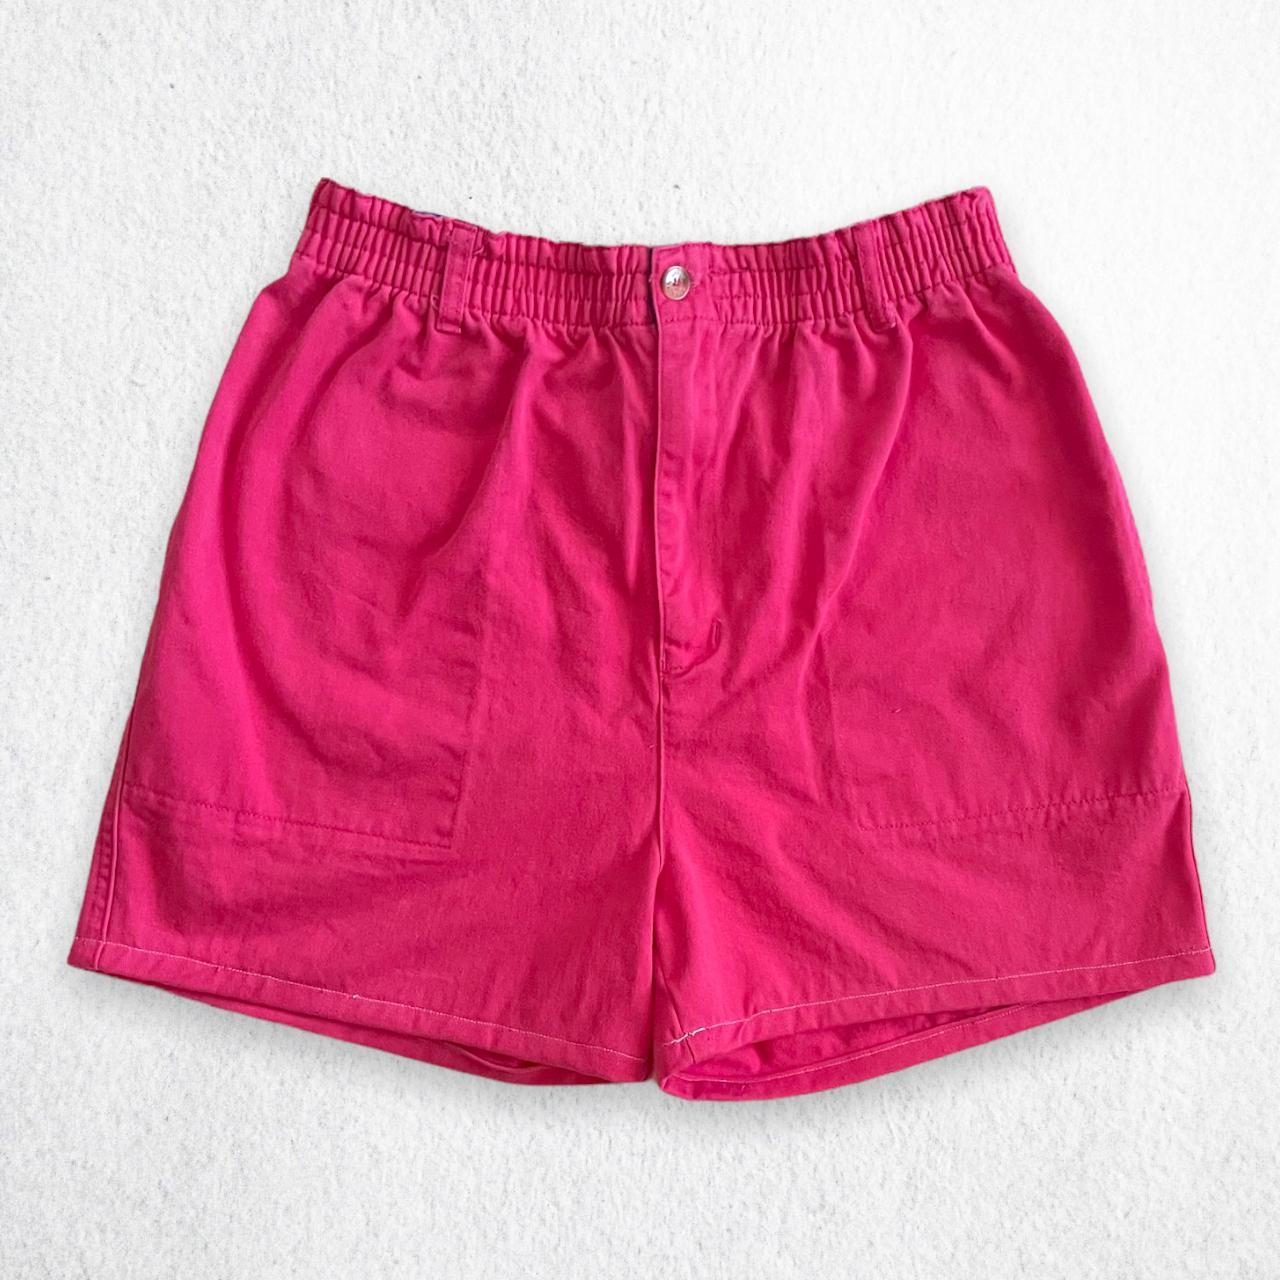 Product Image 1 - night waisted shorts

Upcycled Vintage 80's